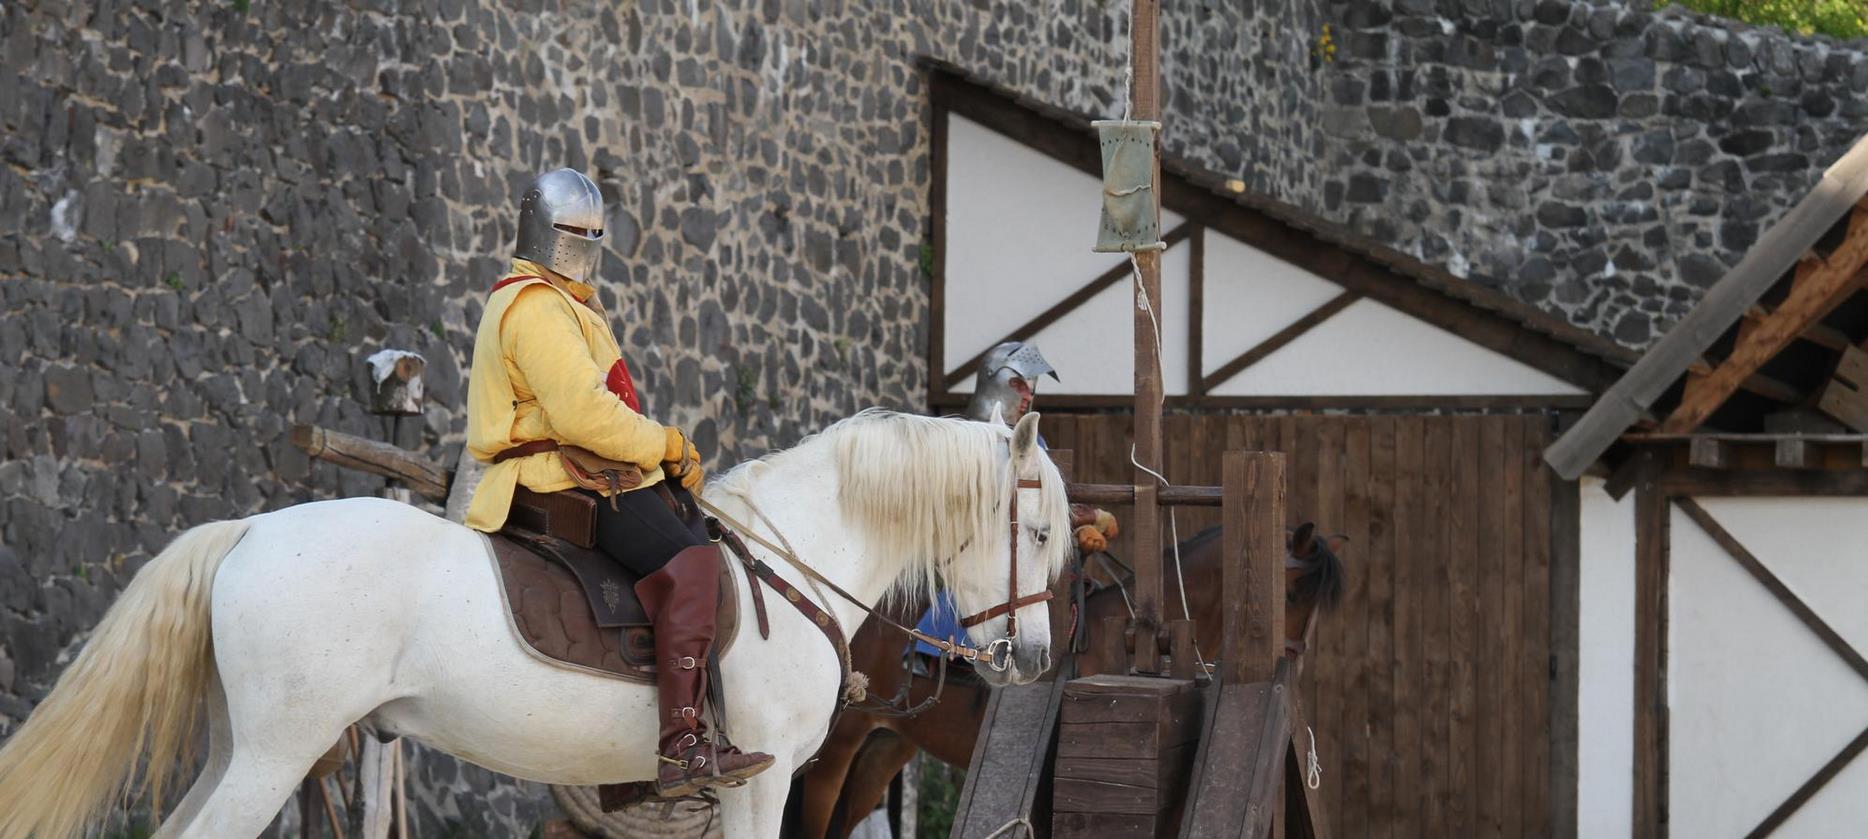 Super Besse - Chateau de Murol,et son spectacle equestre